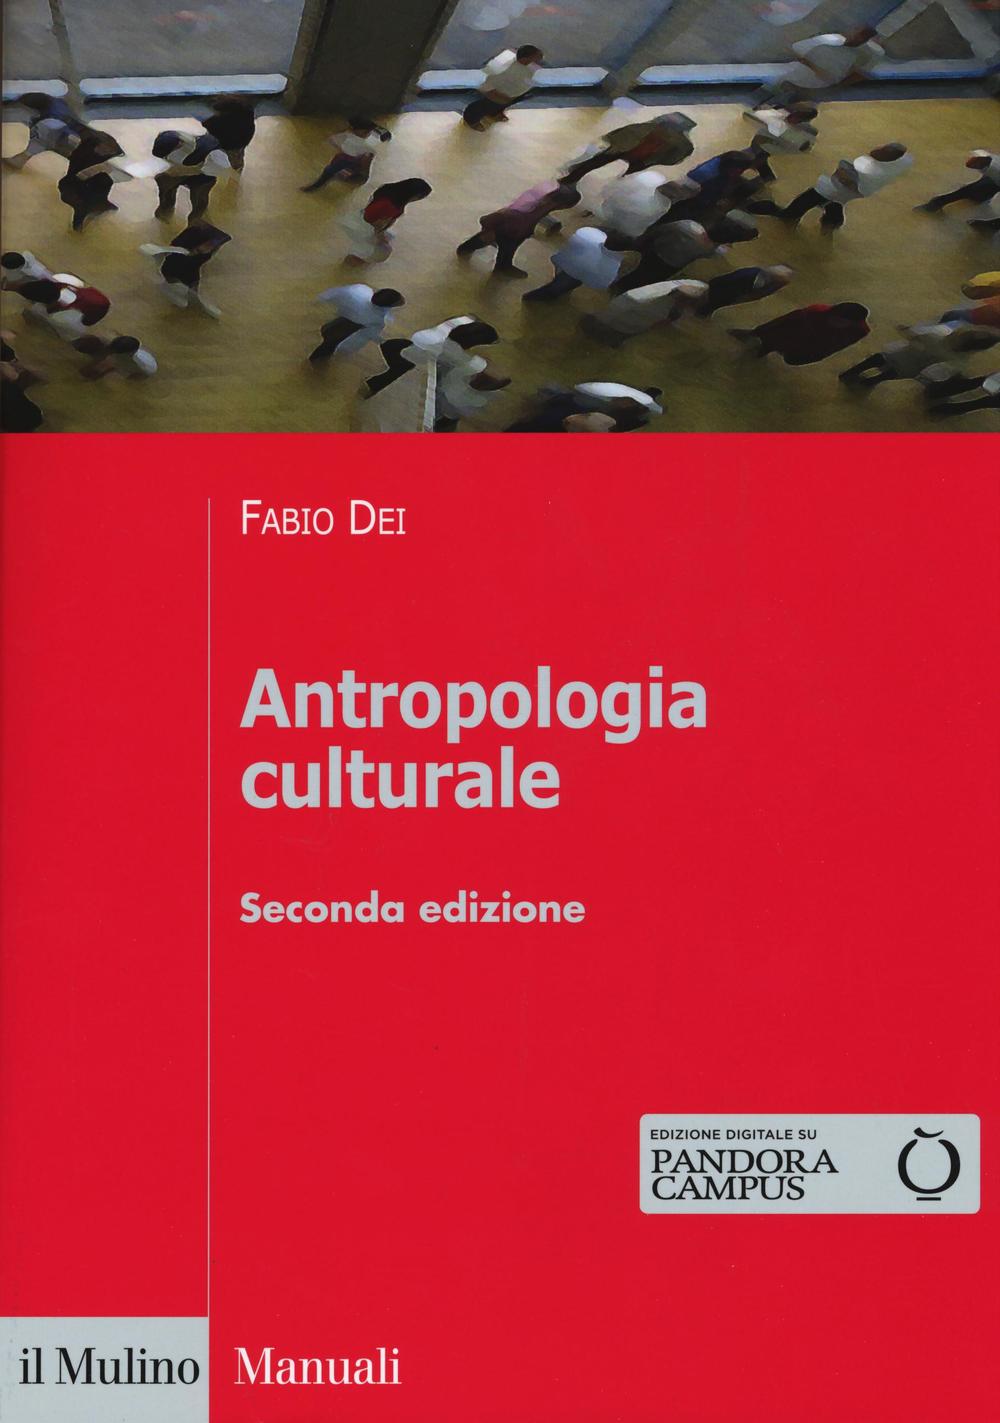 Libri Fabio Dei - Antropologia Culturale NUOVO SIGILLATO, EDIZIONE DEL 08/09/2016 SUBITO DISPONIBILE